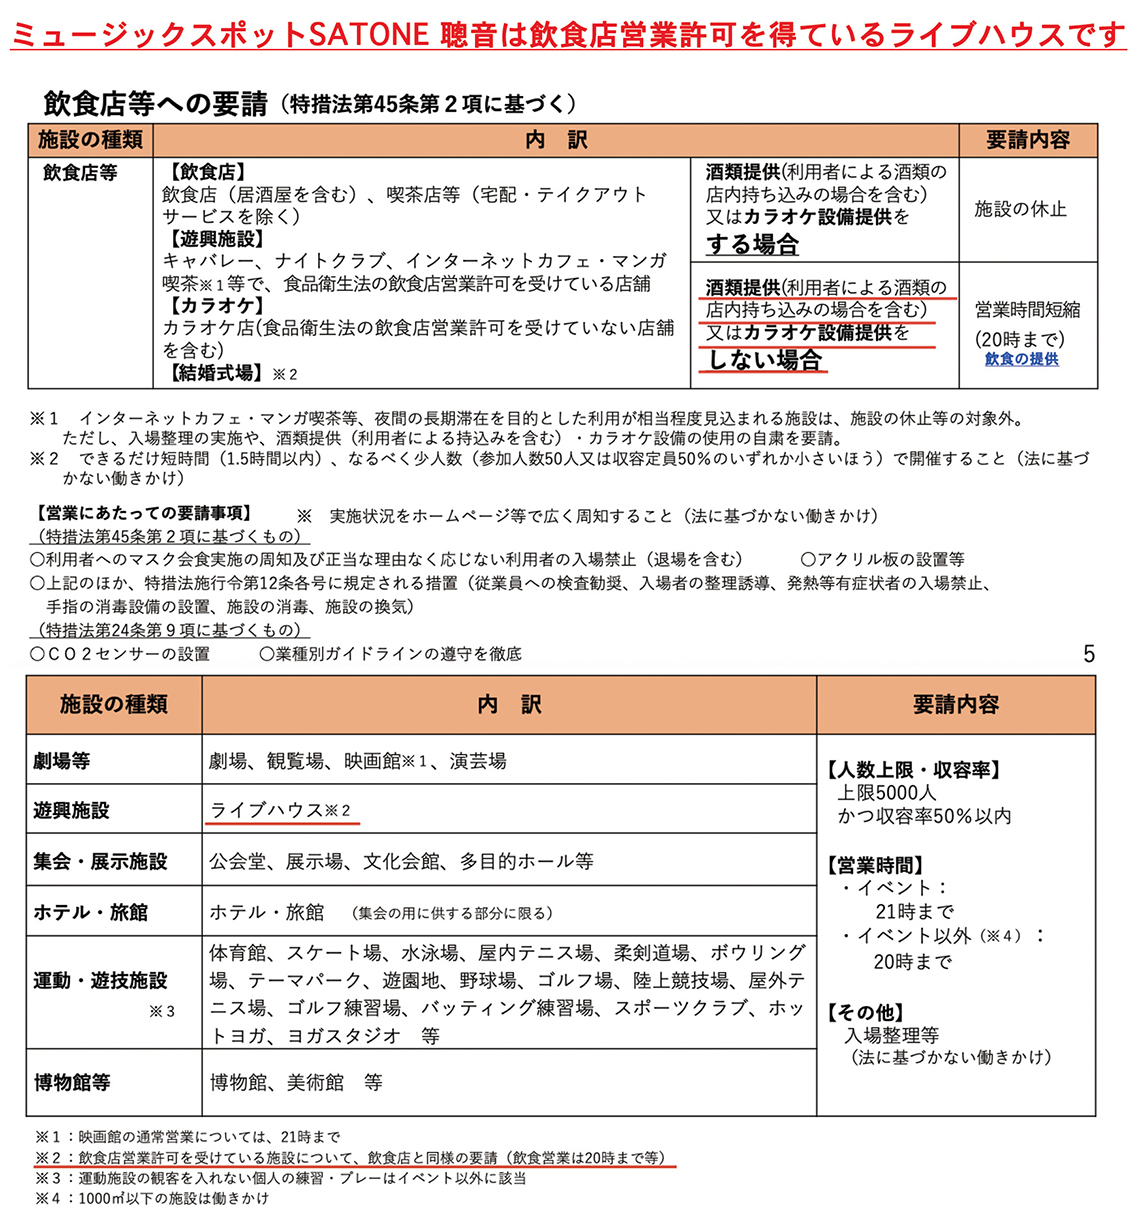 令和3年9月12日まで日本国政府（大阪府）より新型コロナ感染症『緊急事態宣言』延長発令の要請に従い、この期間のライブ営業時間を変更いたします。